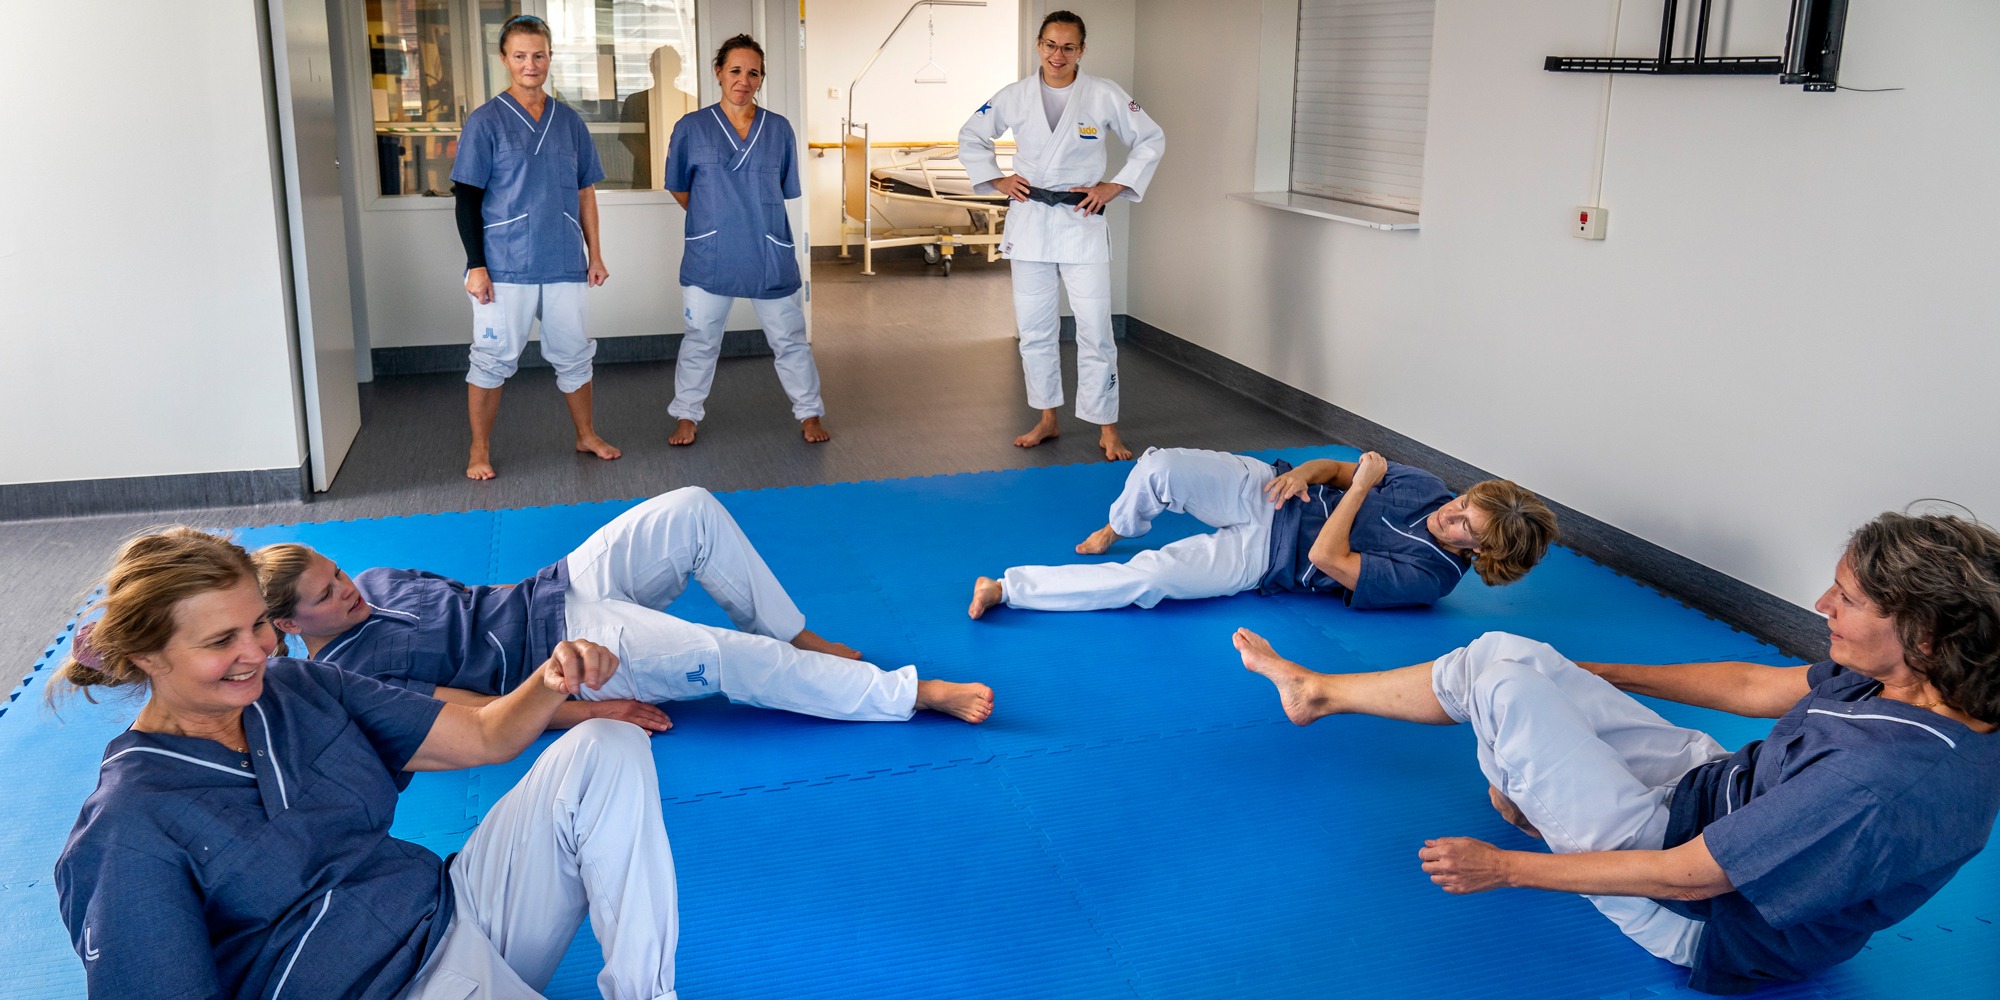 Fyra personer i sjukhuskläder tränar fall på en blå gymnastikmatta. Tre andra personer ser på.